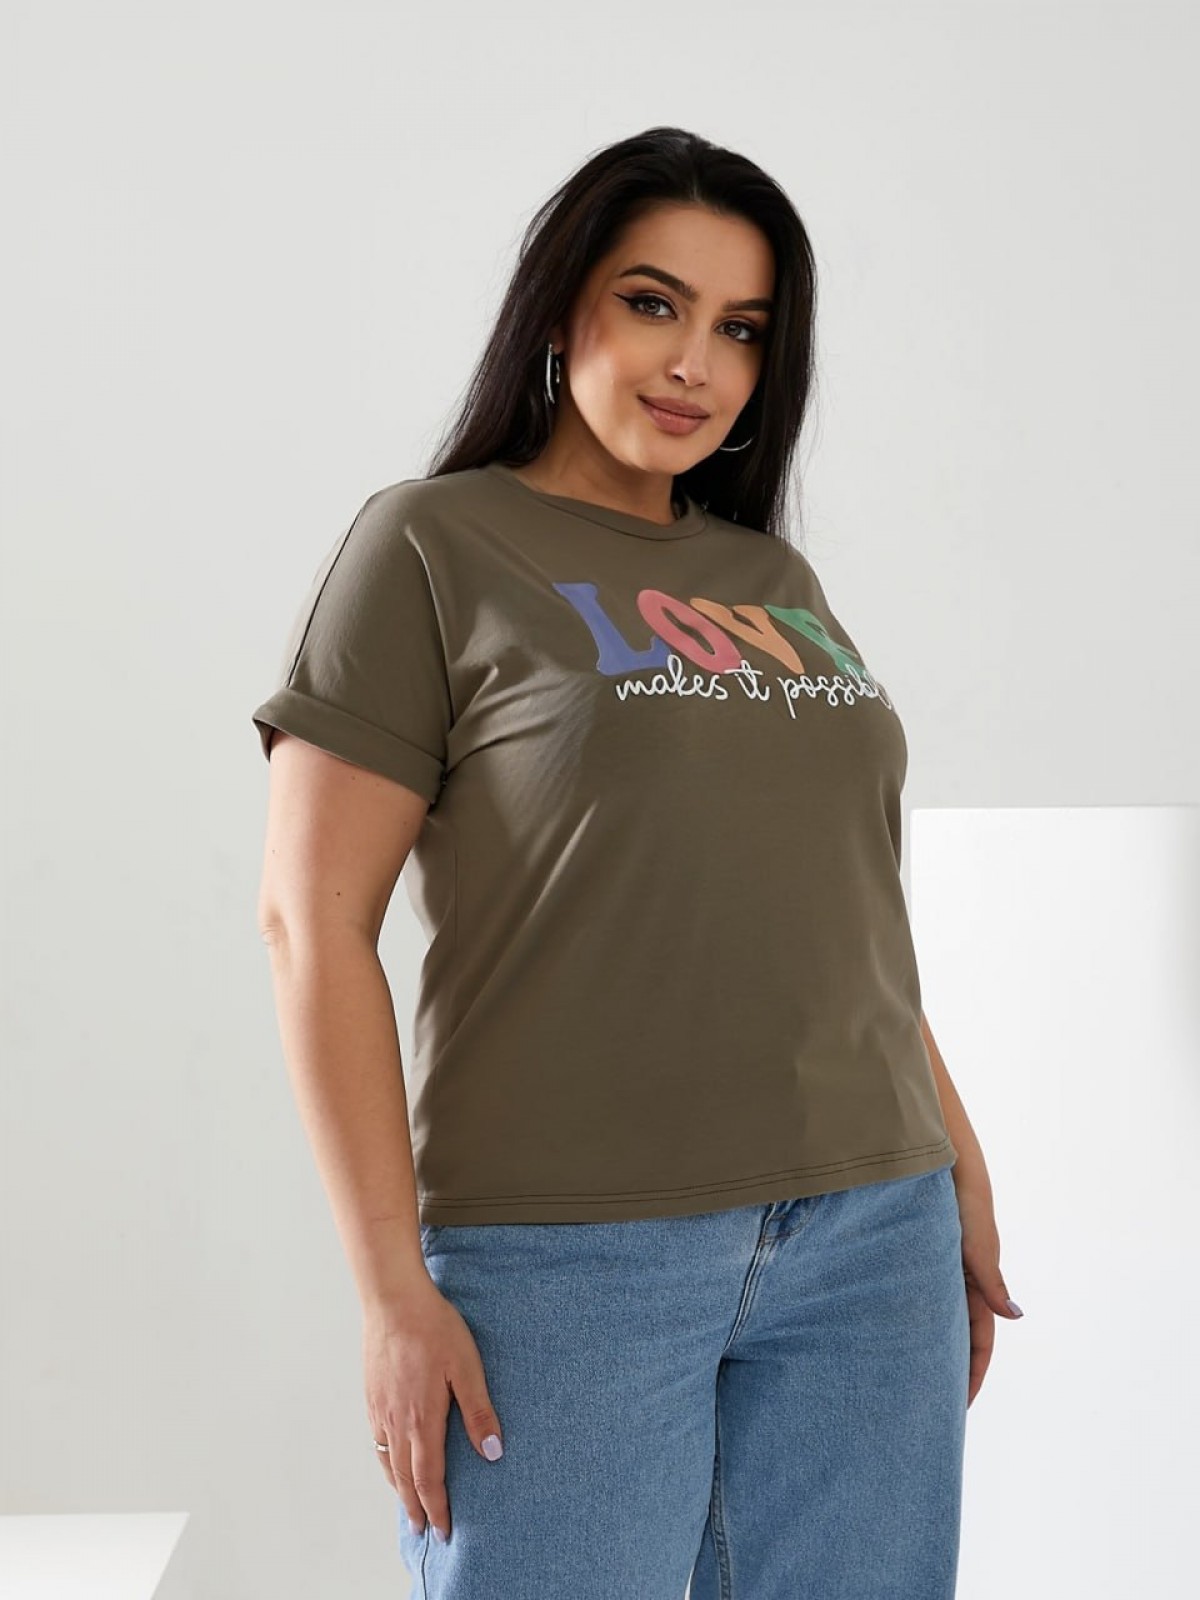 Жіноча футболка LOVE колір світлий хакі р.48/50 432480